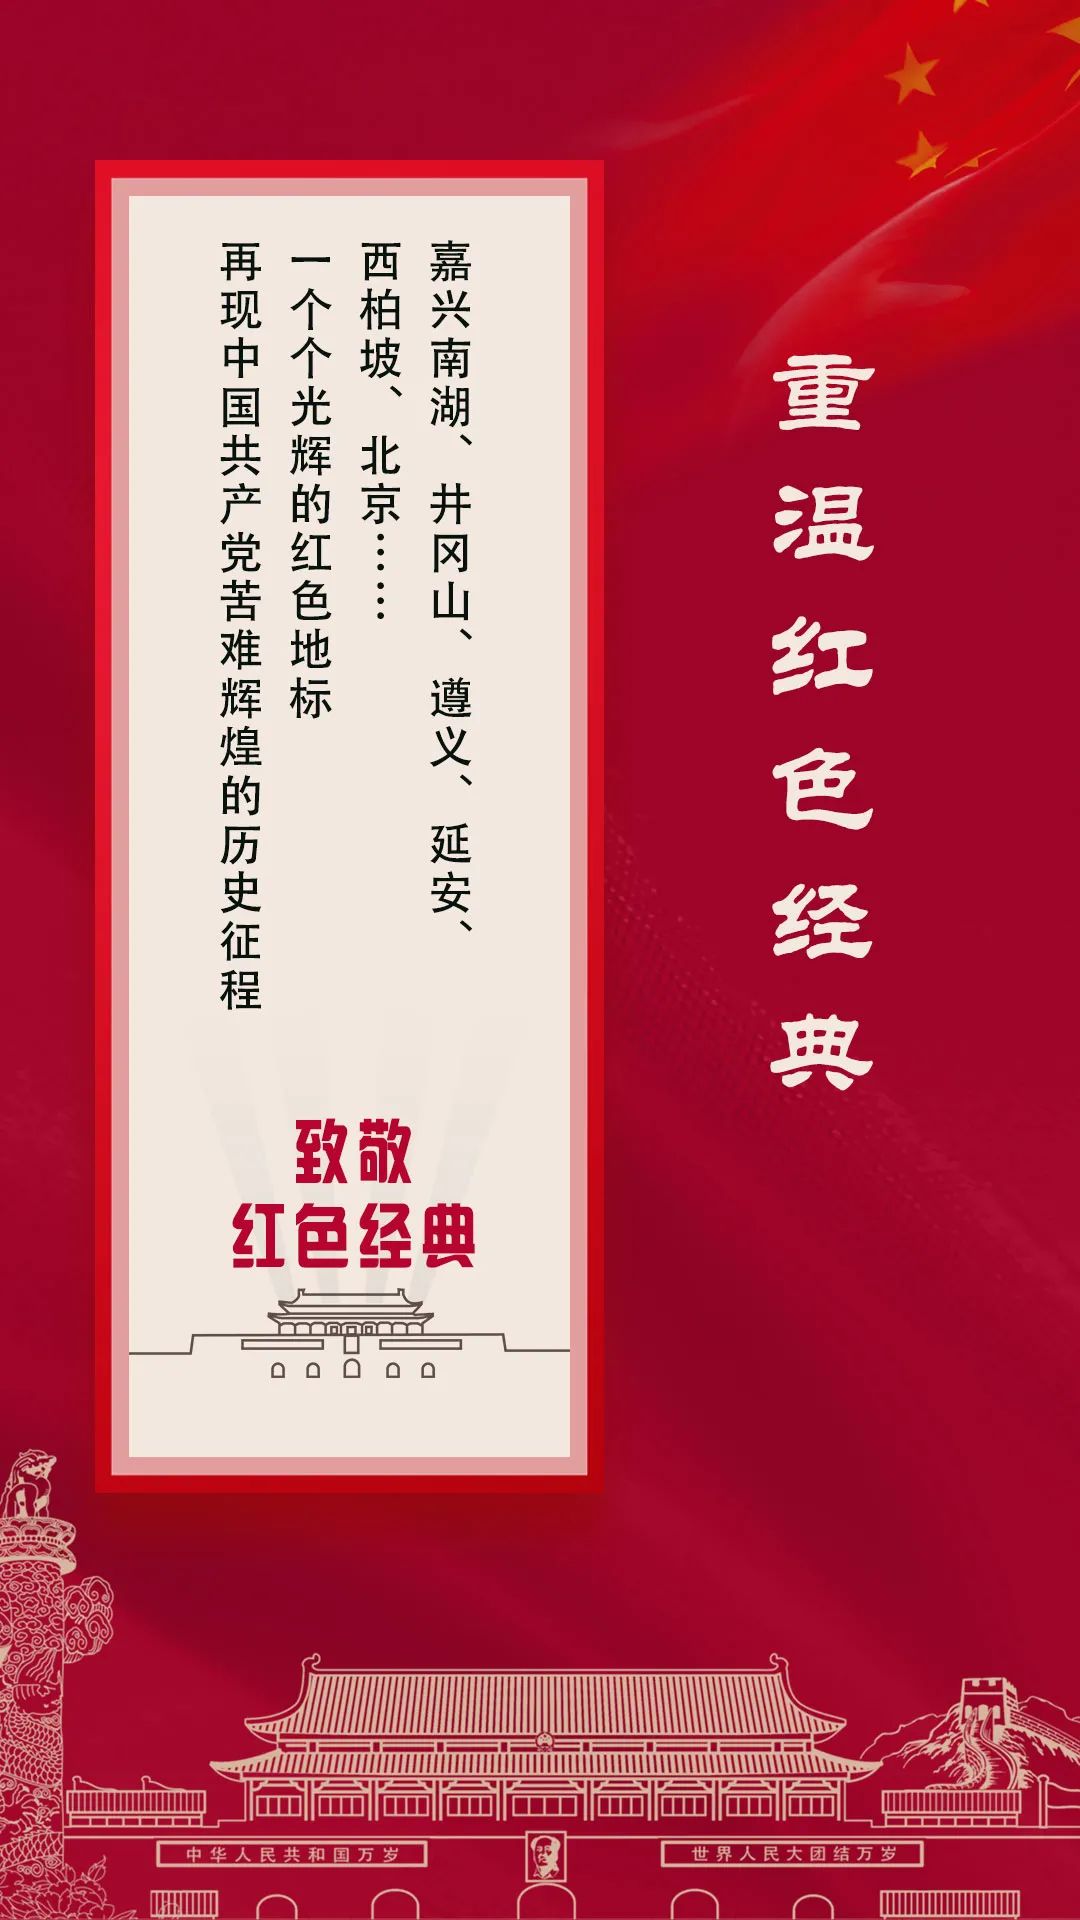 华光国瓷推出“红色经典”系列作品，重温“红色记忆”